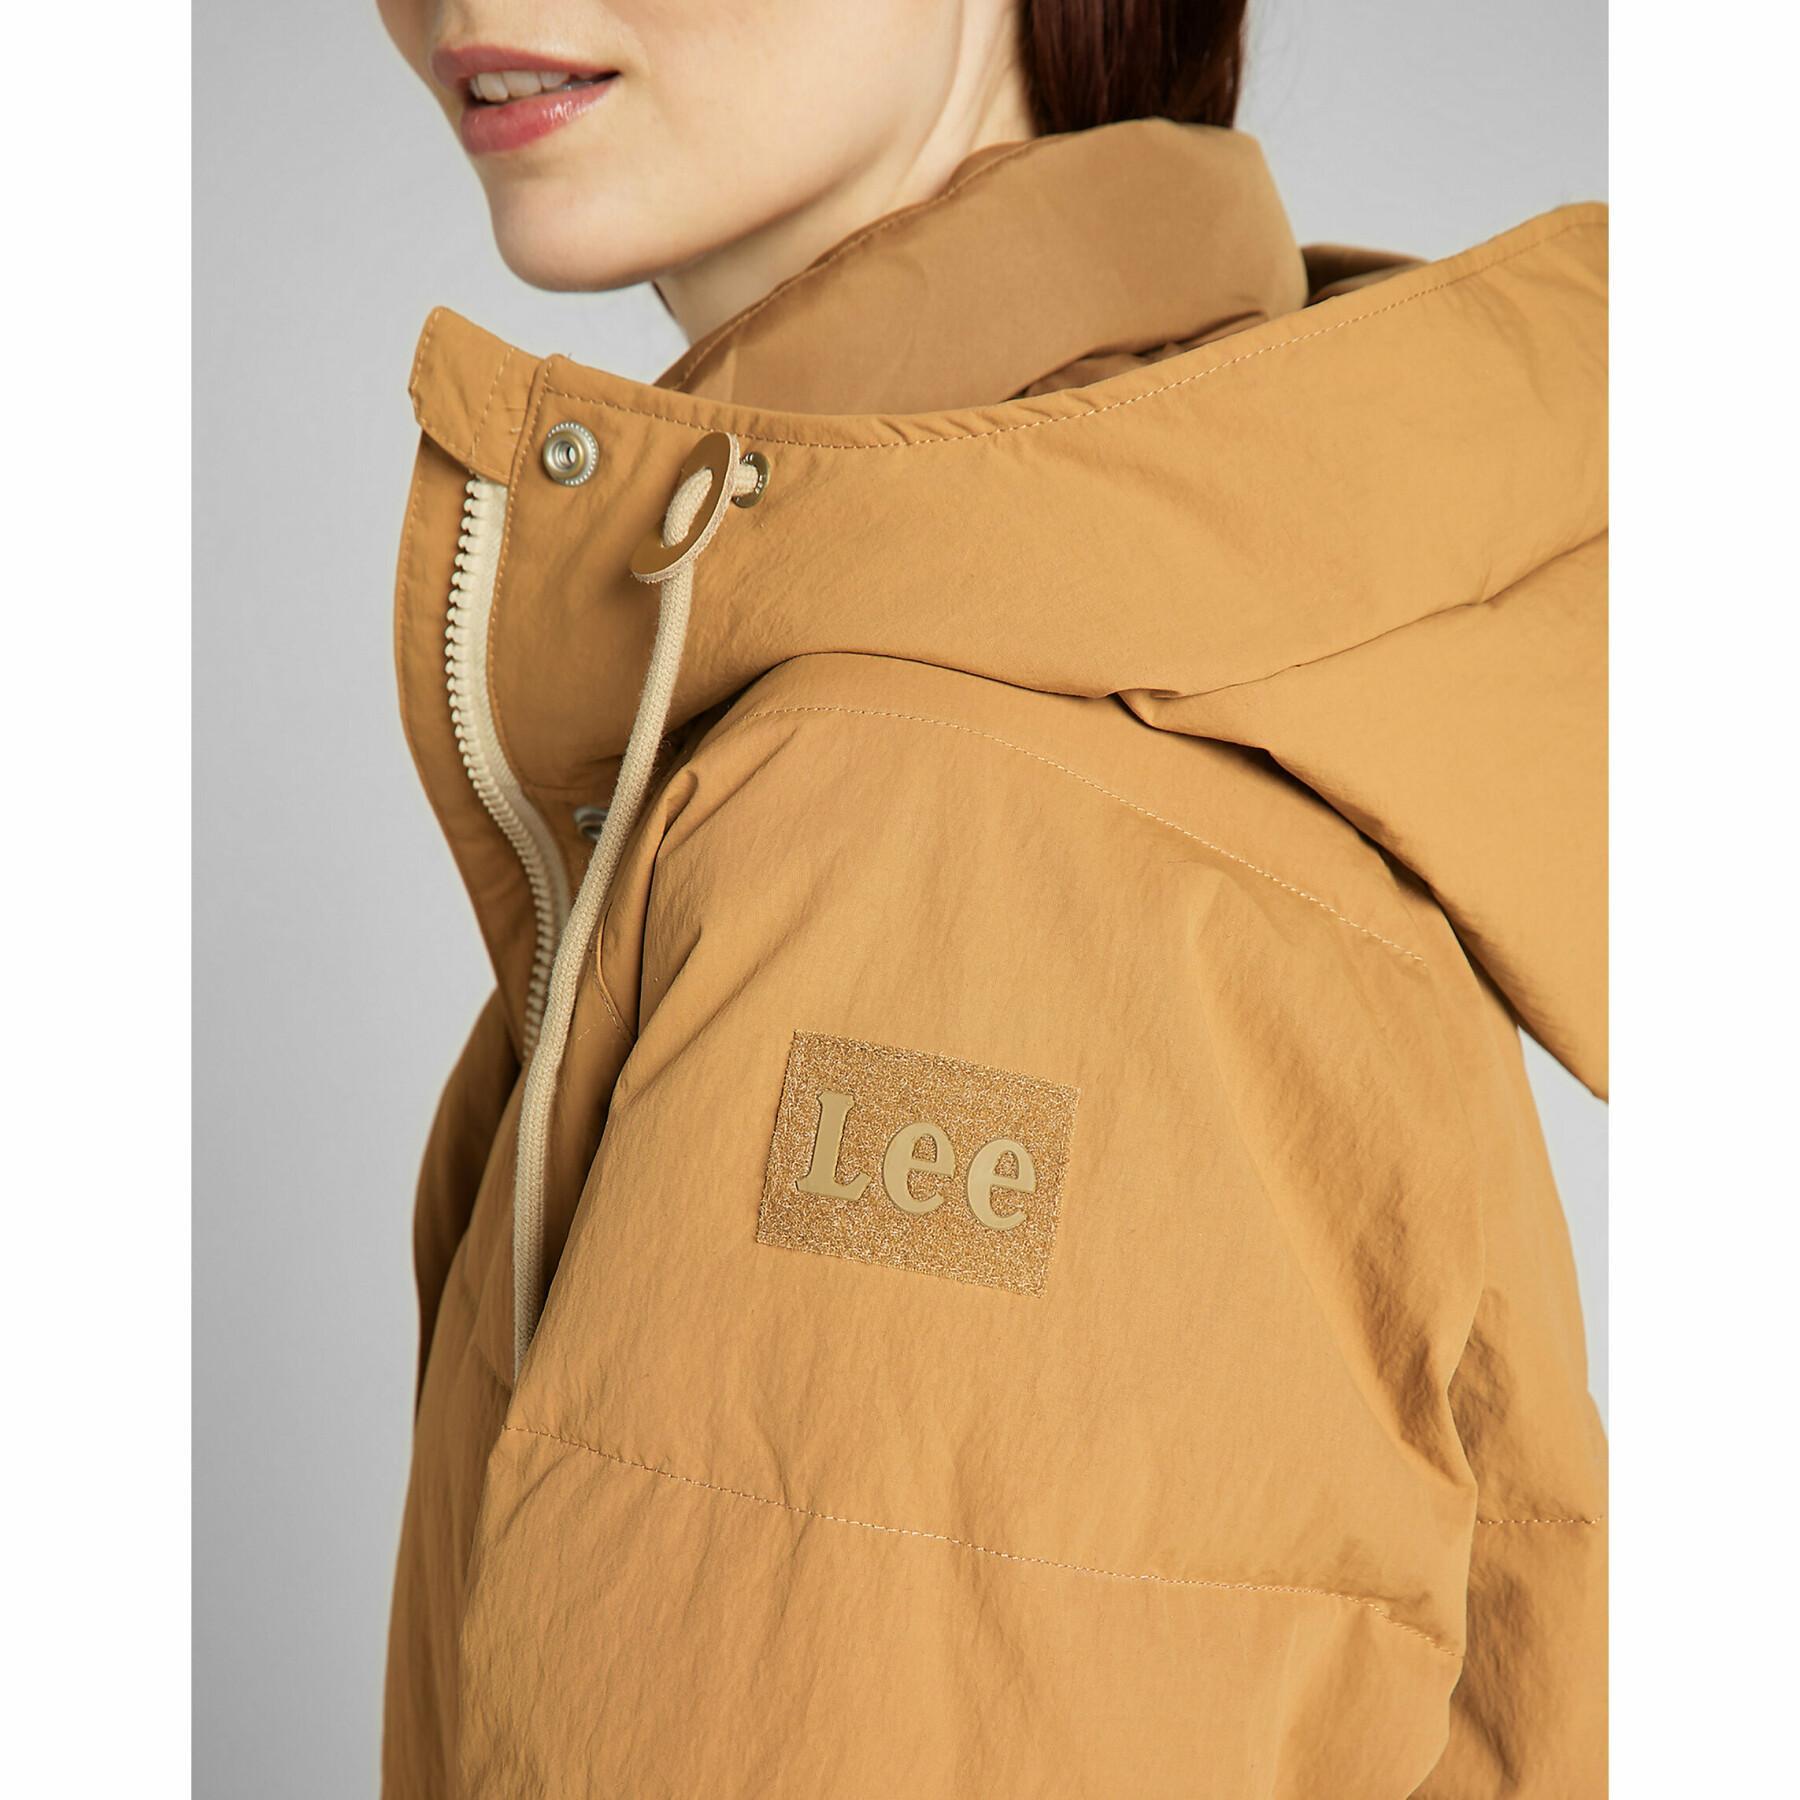 Women's jacket Lee Long Puffer